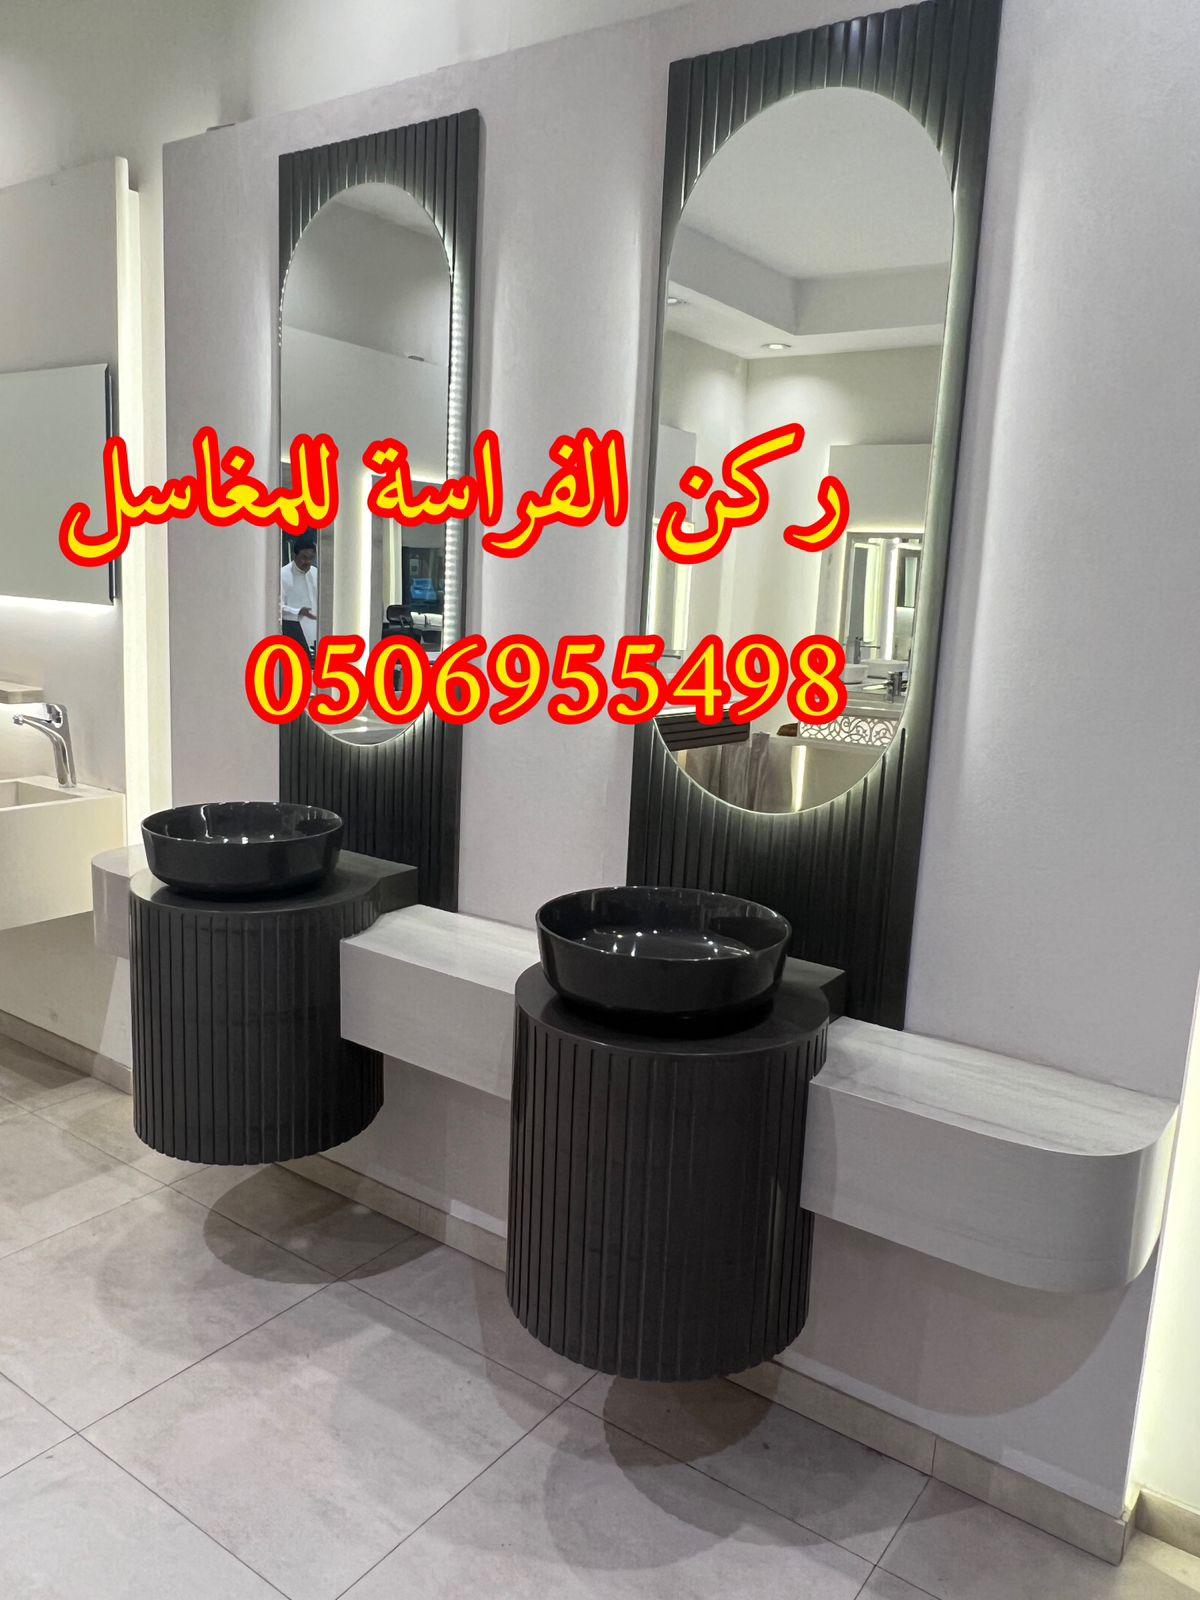 مغاسل حمامات رخام مودرن فخمة في الرياض,0506955498 618148493